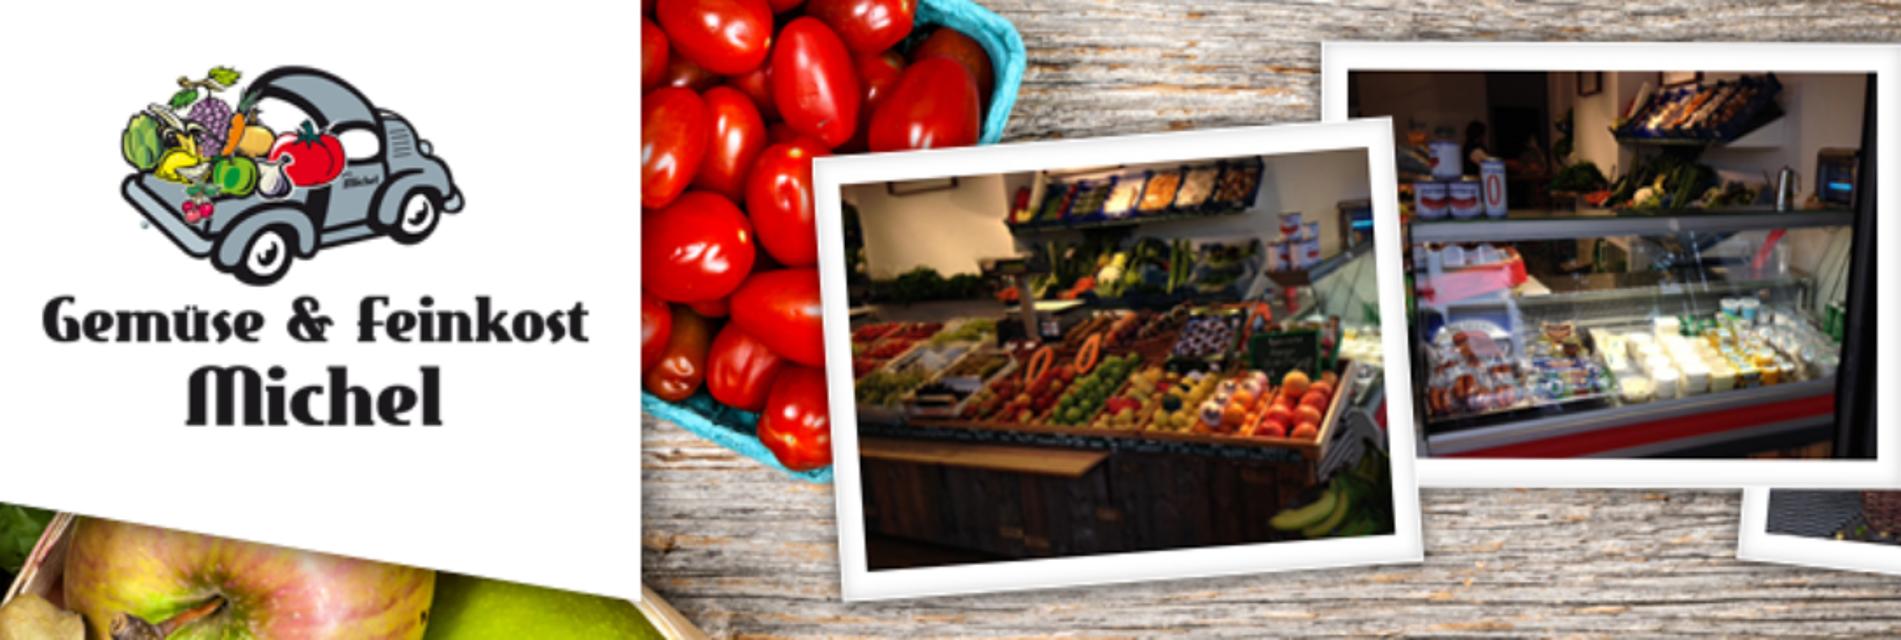 Im Gemüse- und Feinkostgeschäft Michel gibt es täglich frische Produkte aus kontrolliertem Anbau und ein reichhaltiges Angebot aus Obst, Gemüse, Gewürzen und Kräutern.